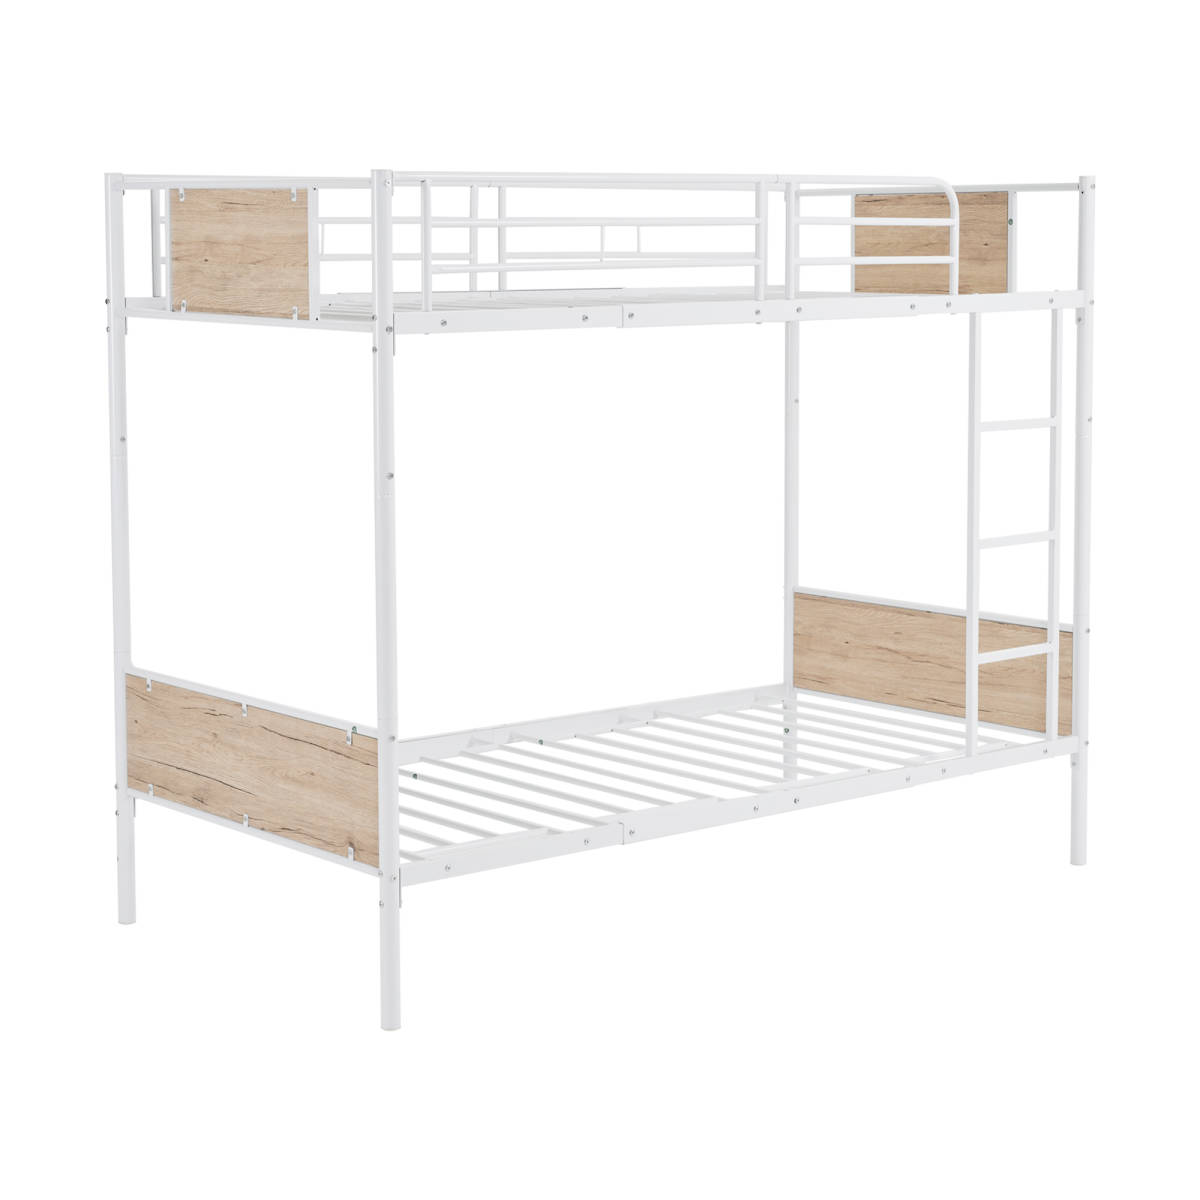 【限定品】 二段ベッド シングルベッド SDG ベッド 耐震 スチール 子供部屋 北欧風 収納 木 シングル パイプベッド 二段ベッド